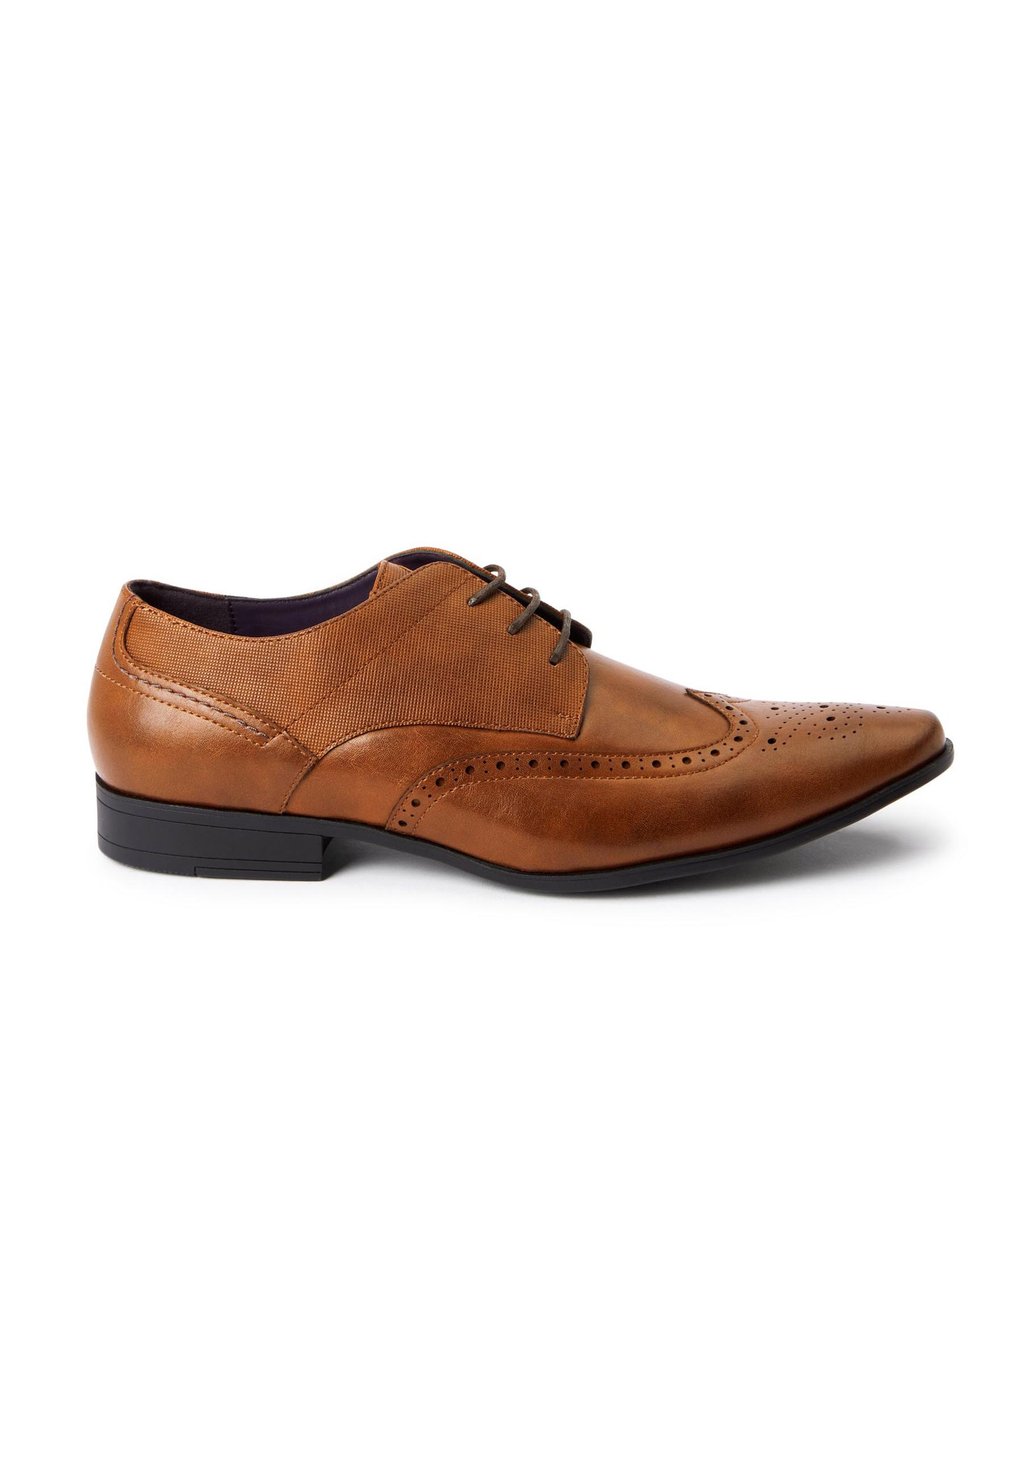 Элегантные туфли на шнуровке Brogue Next, цвет tan brown элегантные туфли на шнуровке next бежевые